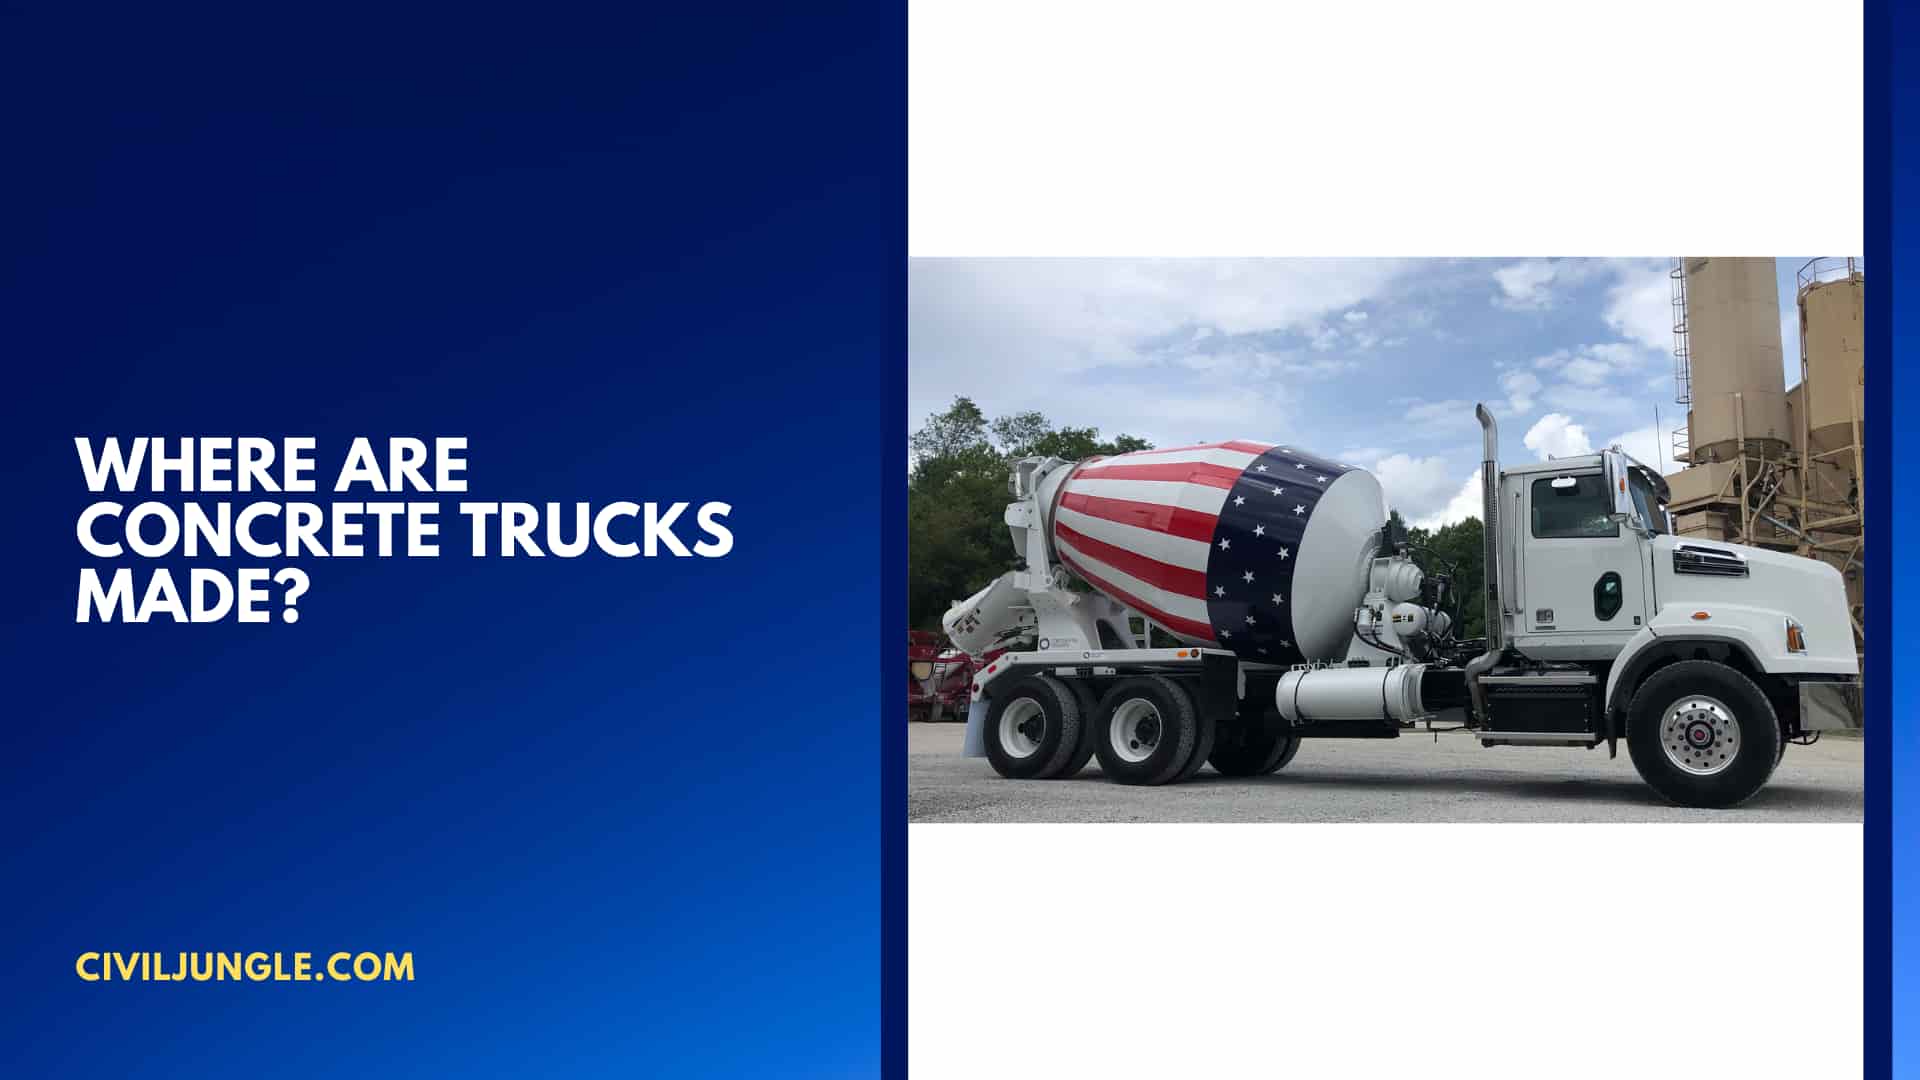 Where are Concrete Trucks Made?